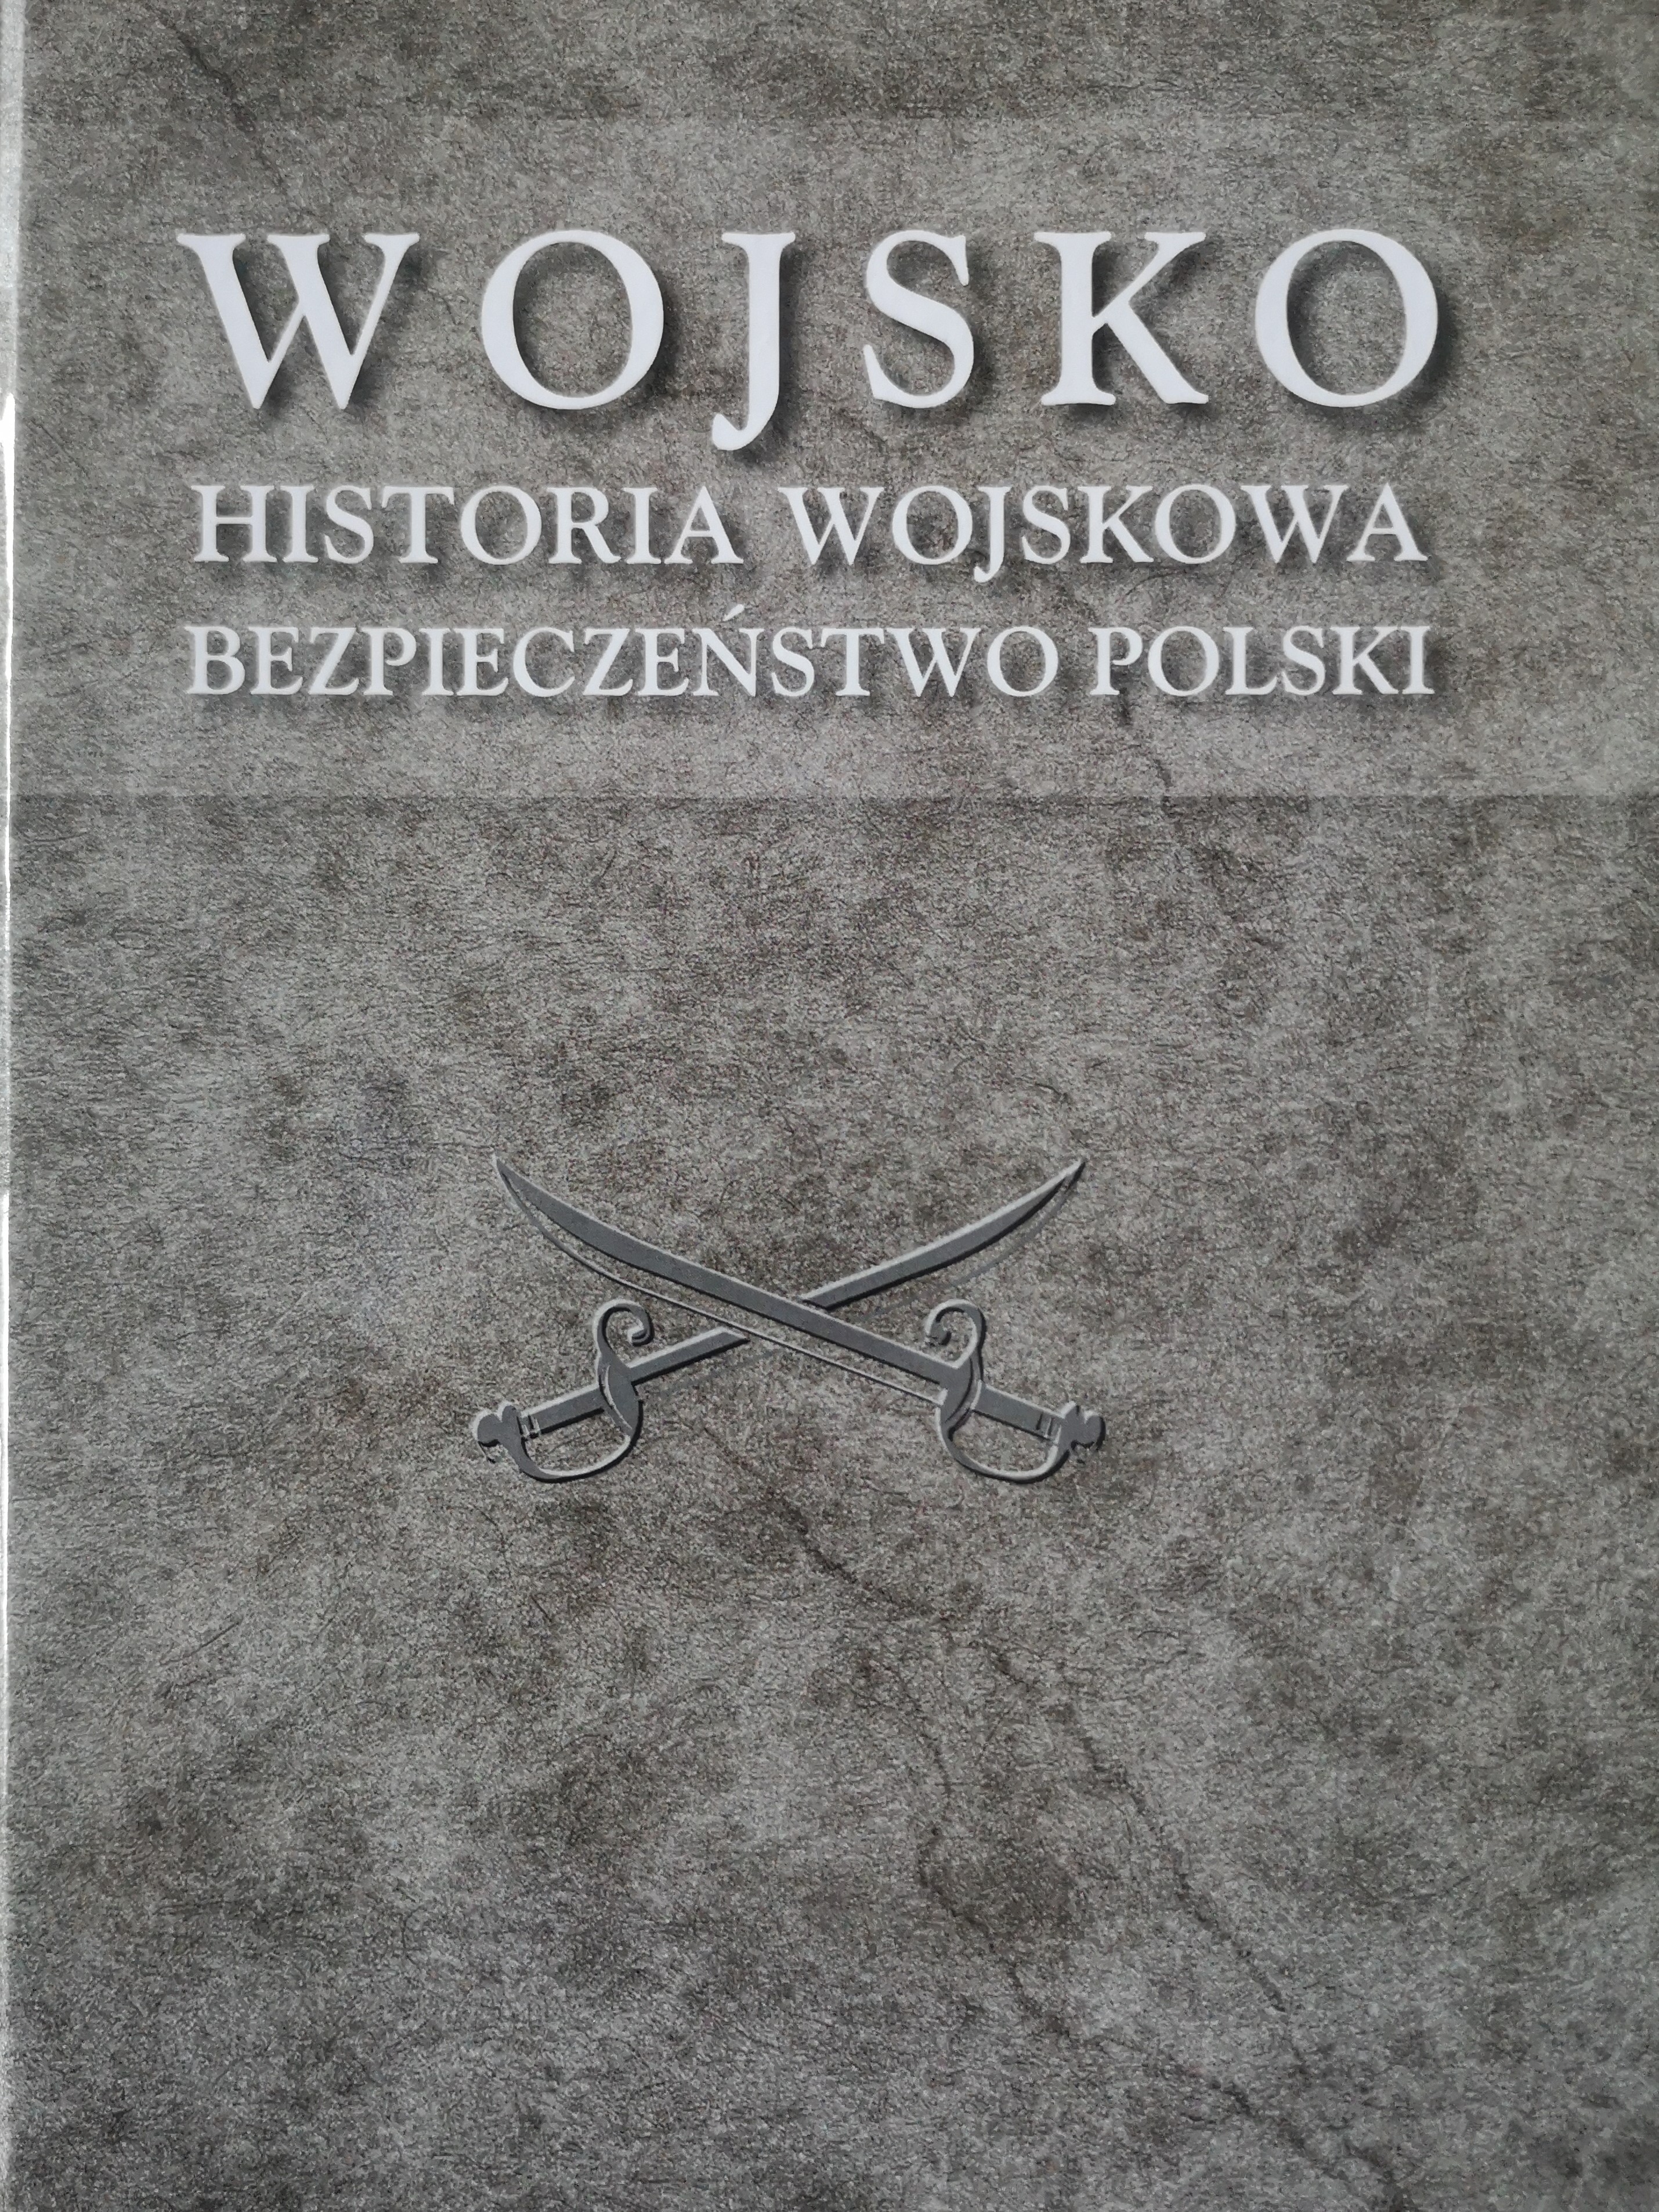 Wojsko Historia wojskowa Bezpieczenstwo Polski